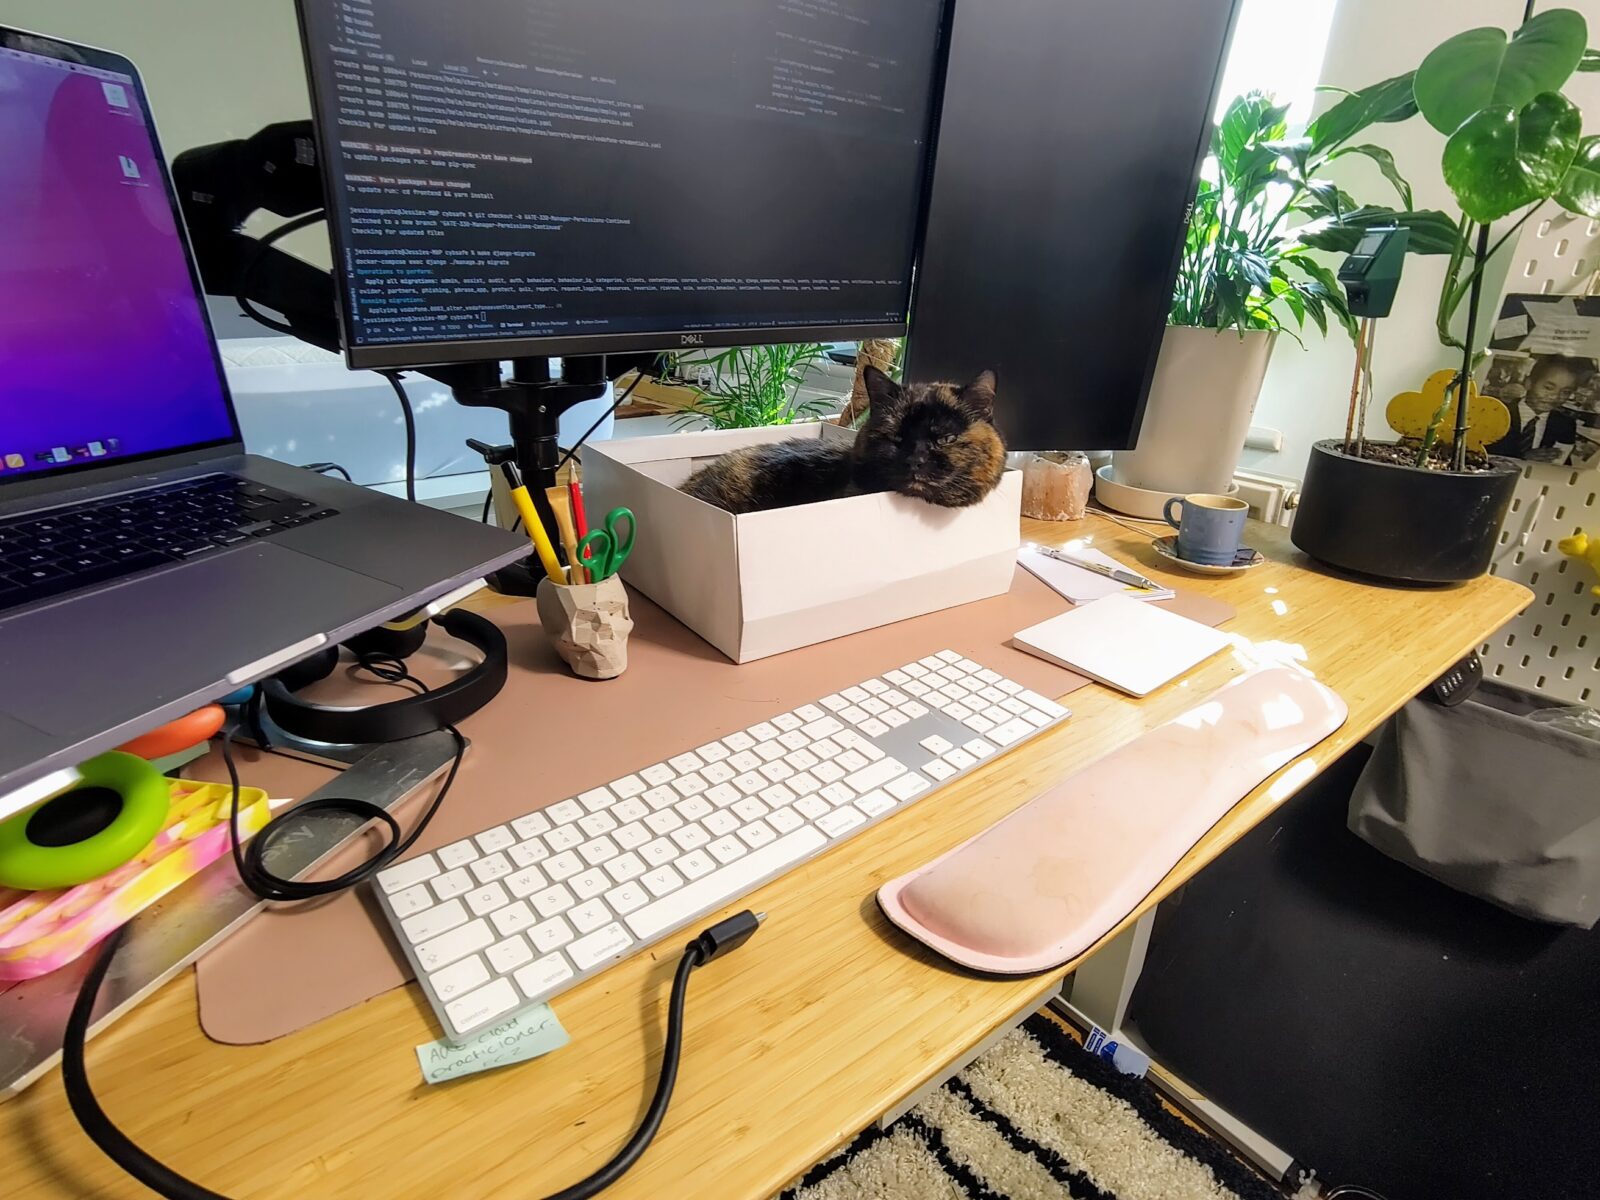 Jessie's cat sat on her desk